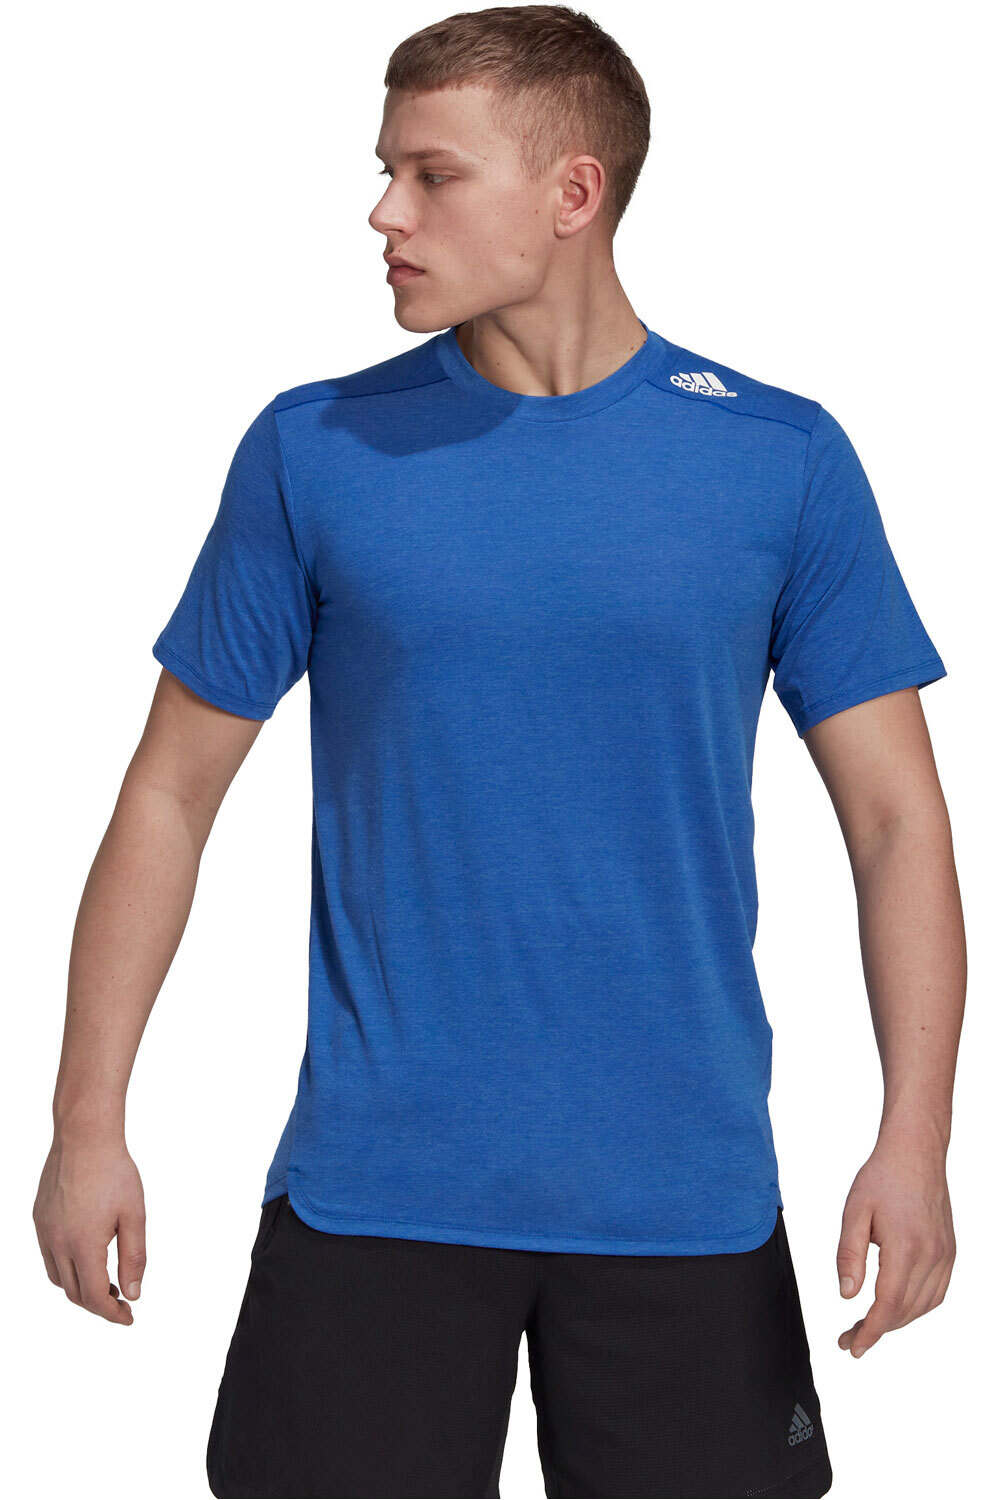 adidas camiseta fitness hombre Designed for Training vista frontal